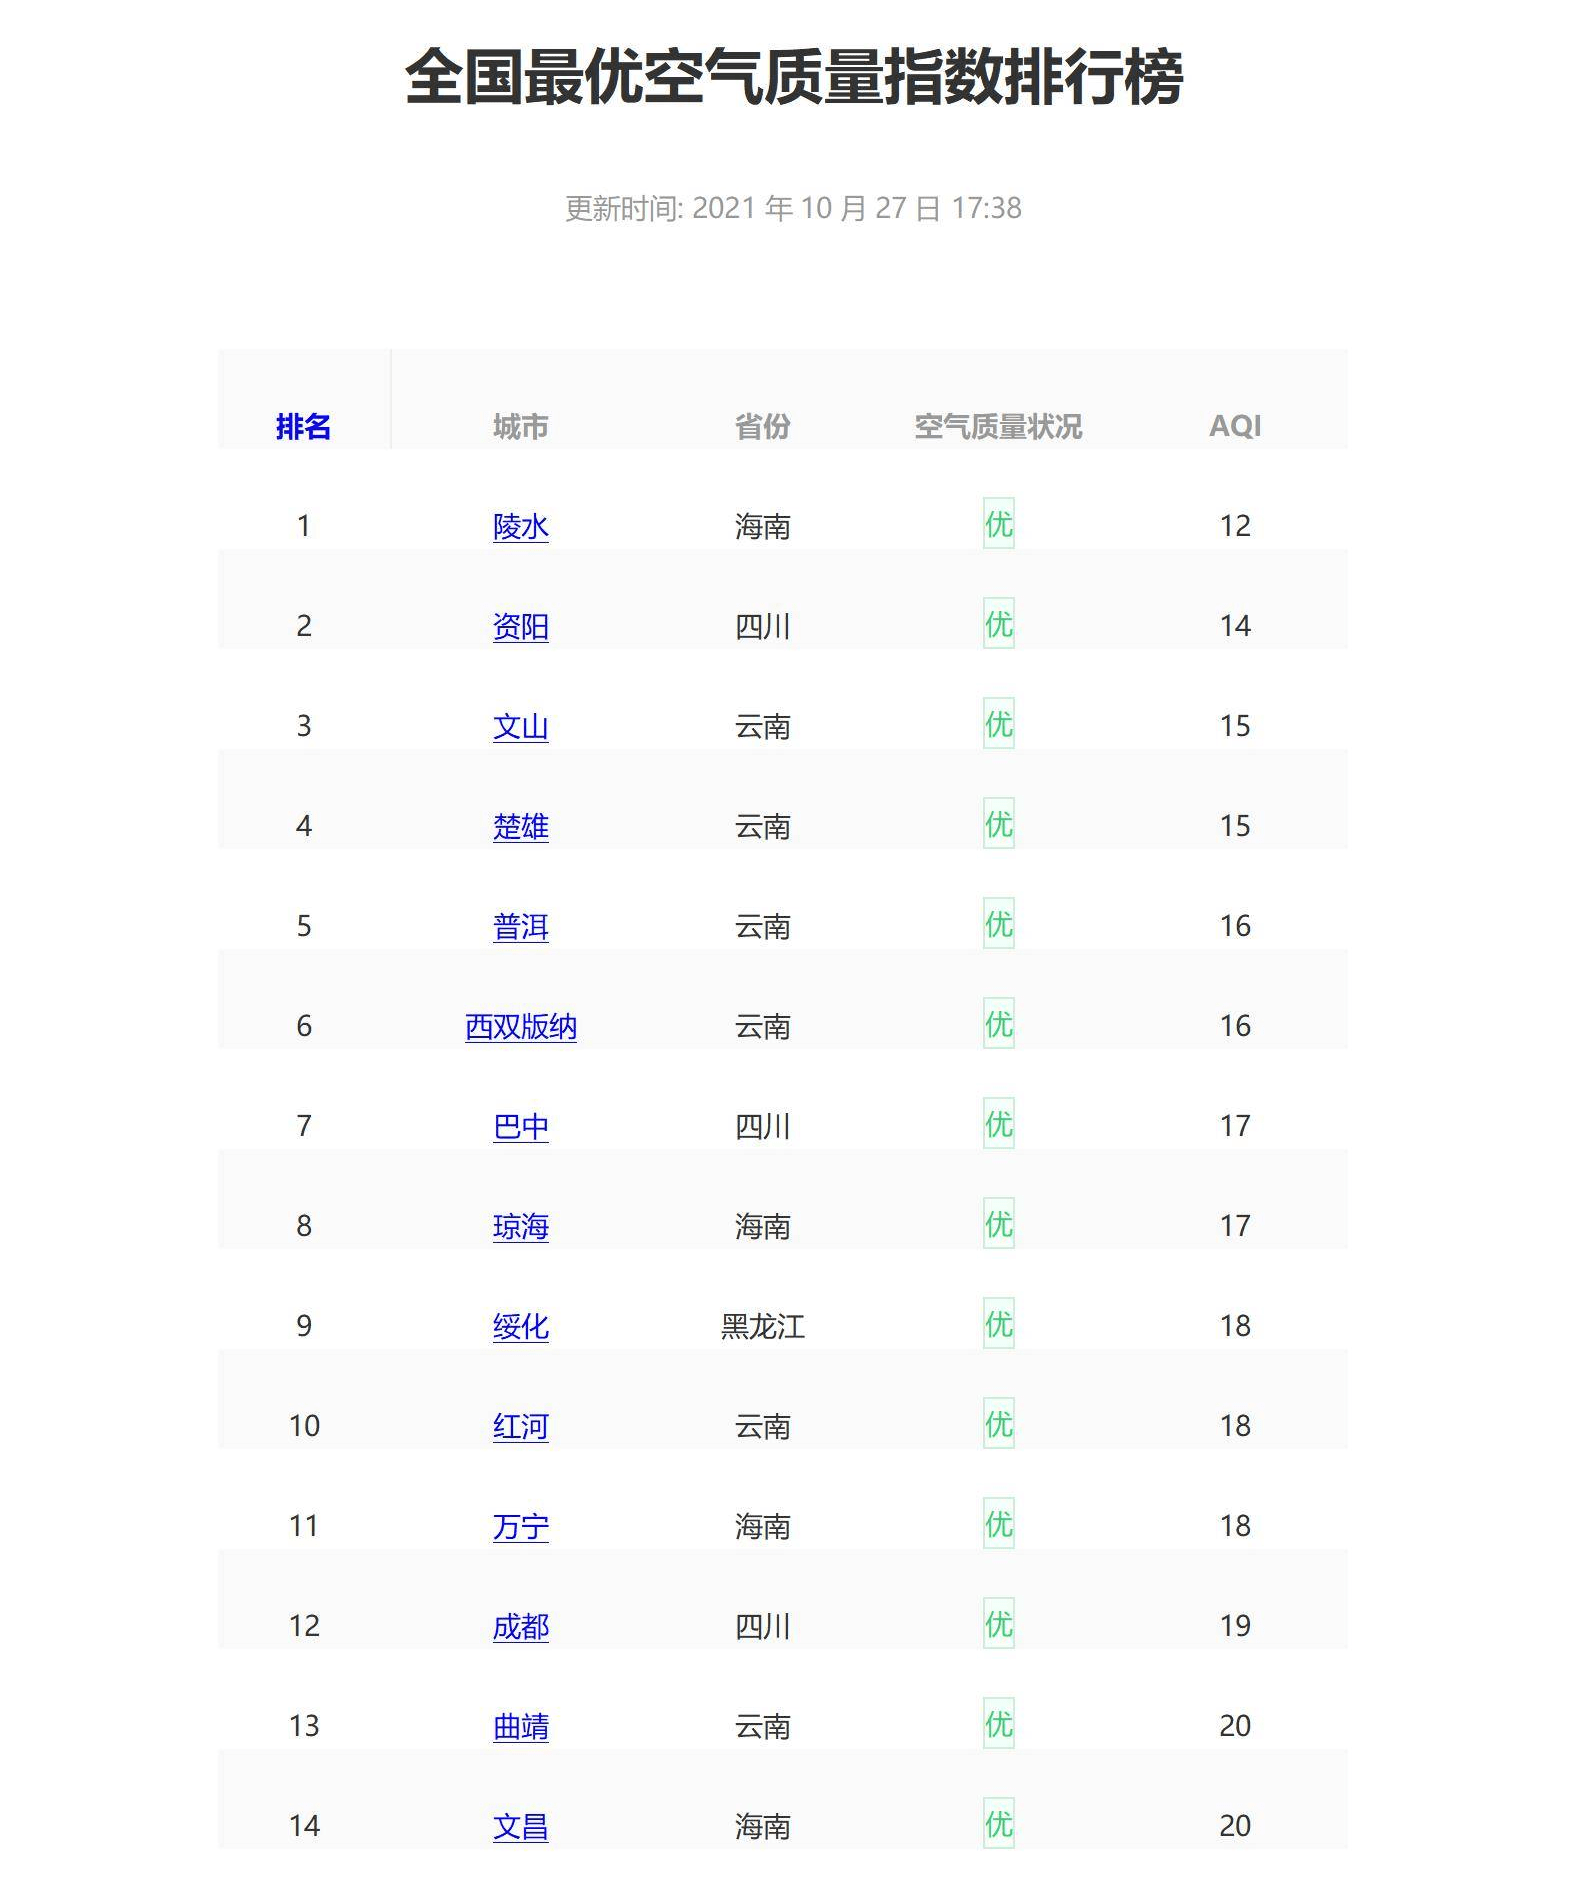 胁差排行_2021年已播出12部TVB部,失望度排行,期望值最高的占首位